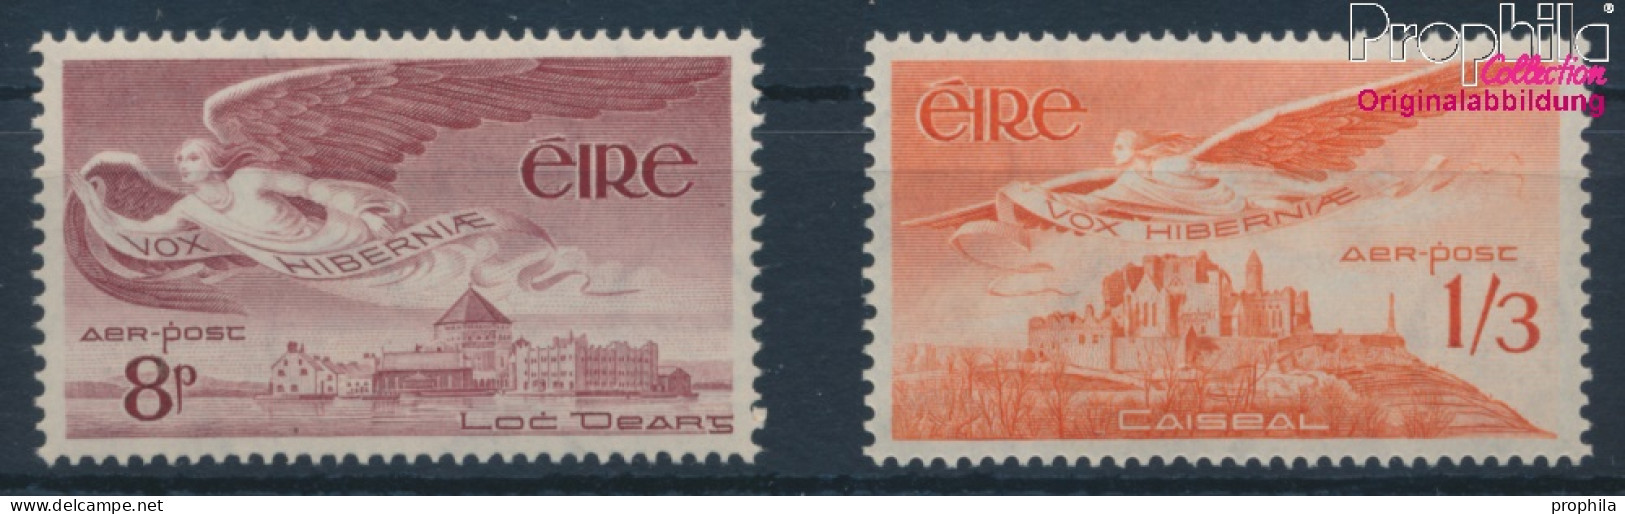 Irland 124-125 (kompl.Ausg.) Postfrisch 1954 Engel (10398342 - Unused Stamps